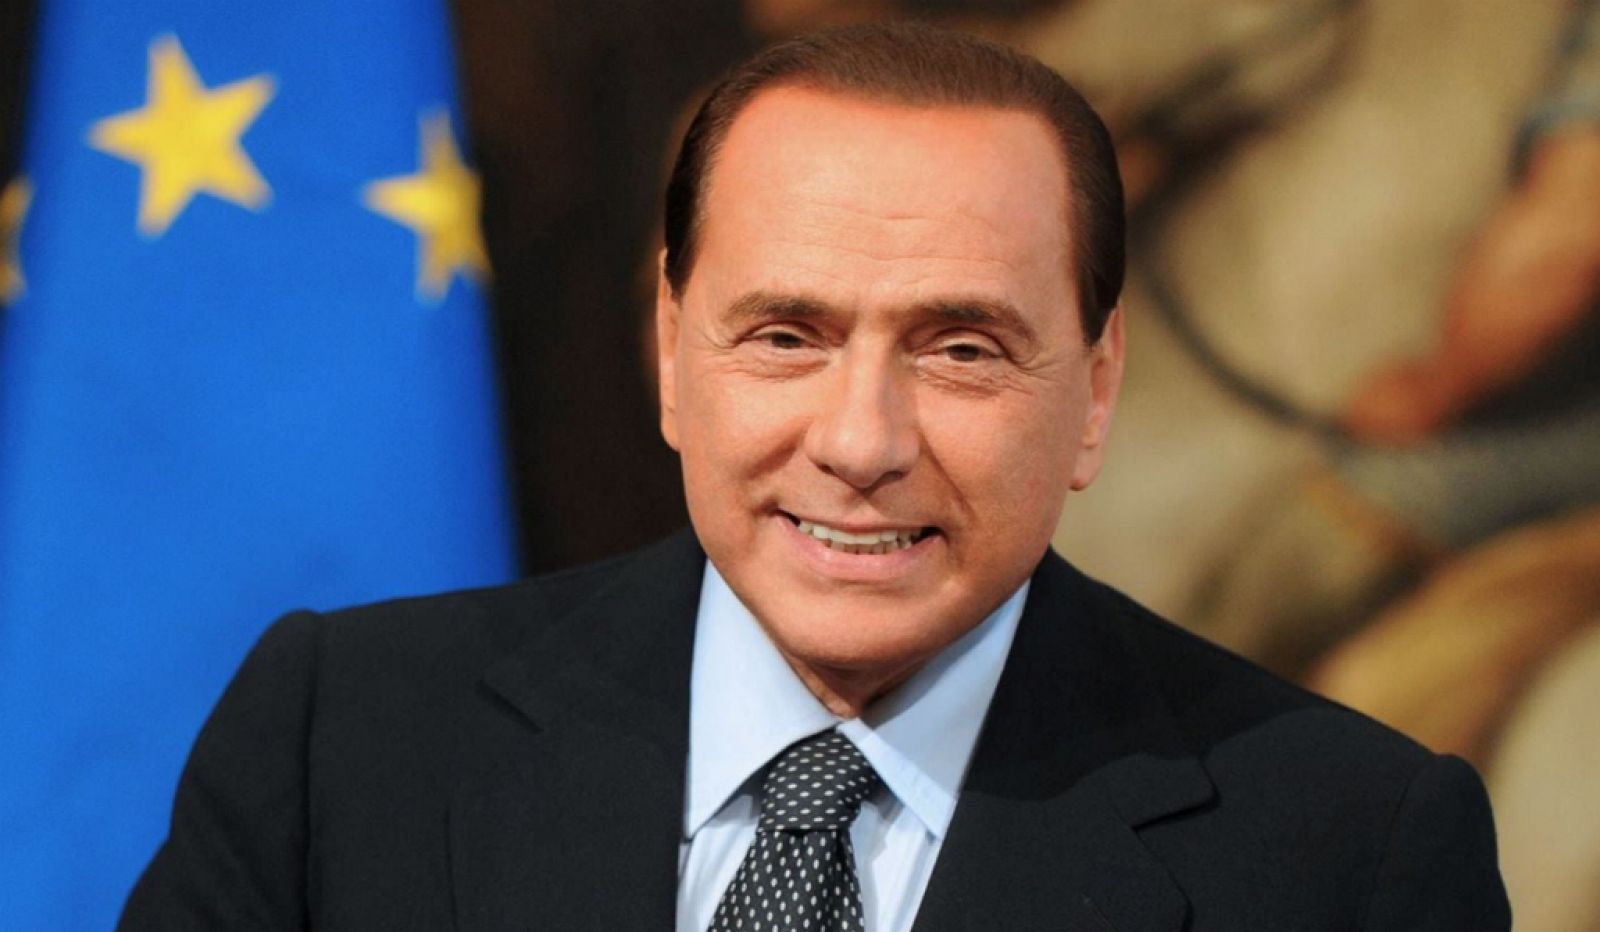 14 horas - Silvio Berlusconi será candidato en las elecciones europeas - Escuchar ahora